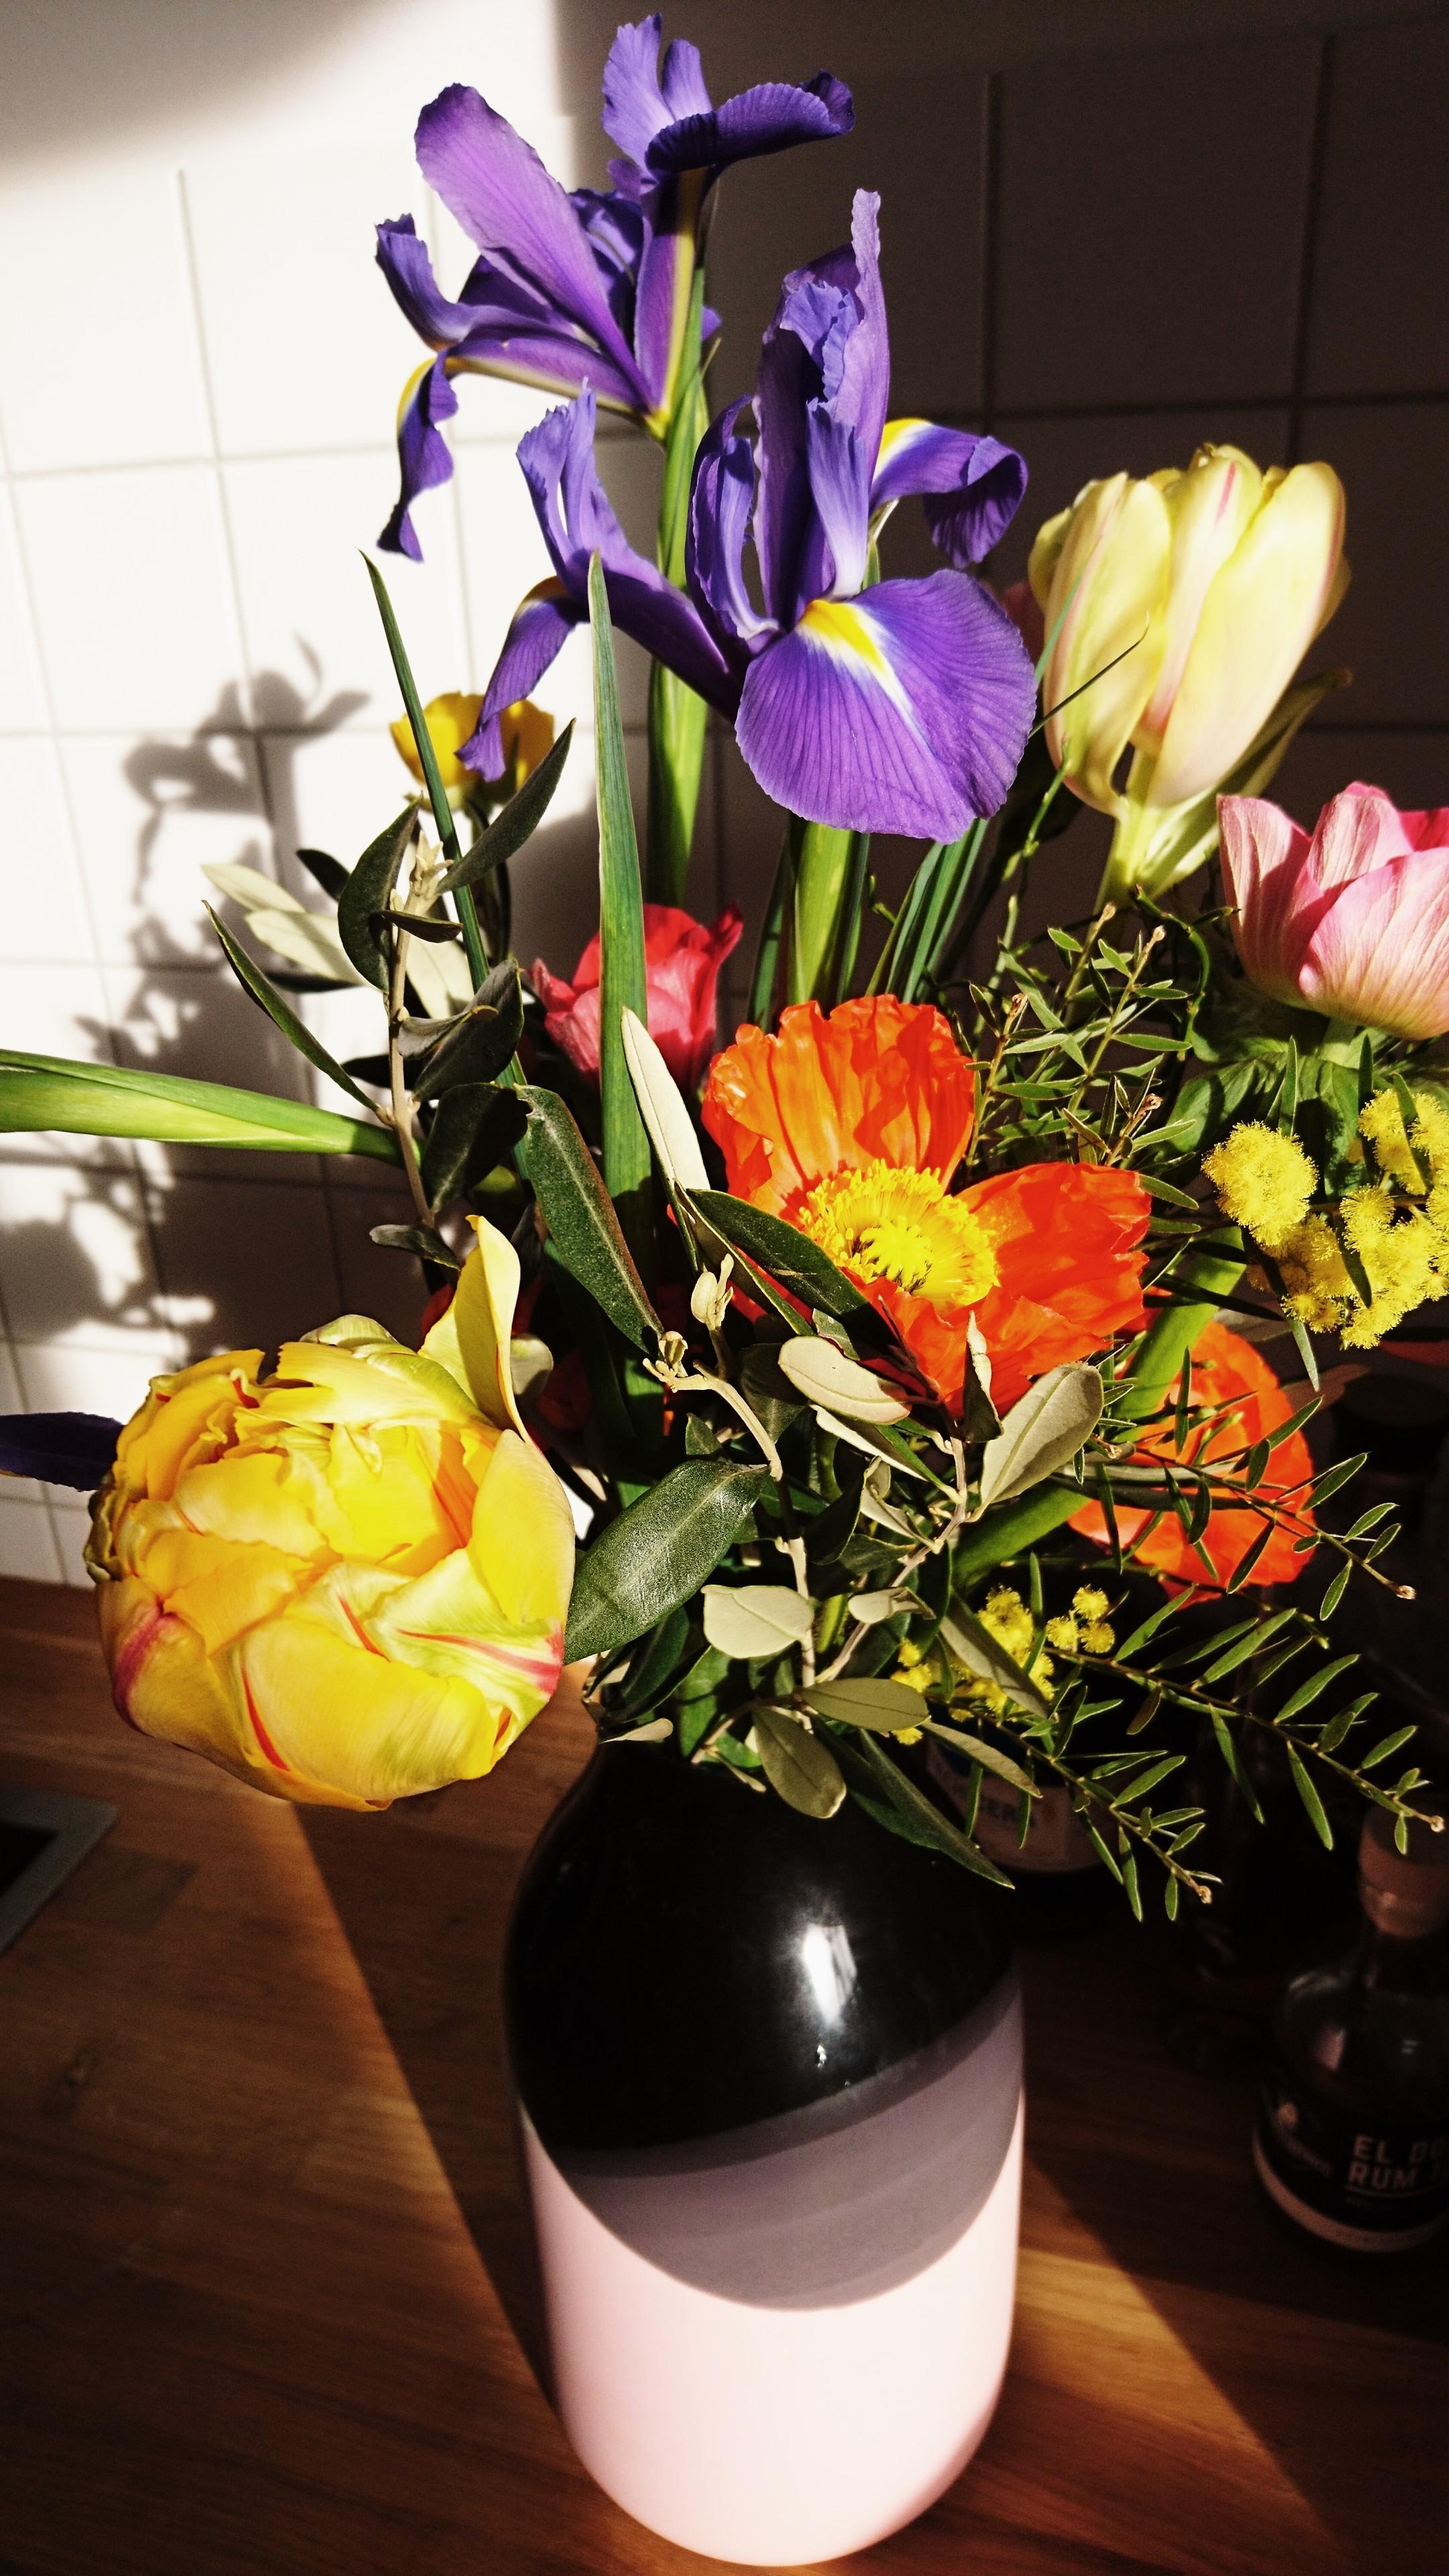 Freude nimmt nicht ab, wenn sie geteilt wird! 💕🌸
#flowers #Blumenliebe #Blumen #Blumenstrauß #freshflowerfriday 